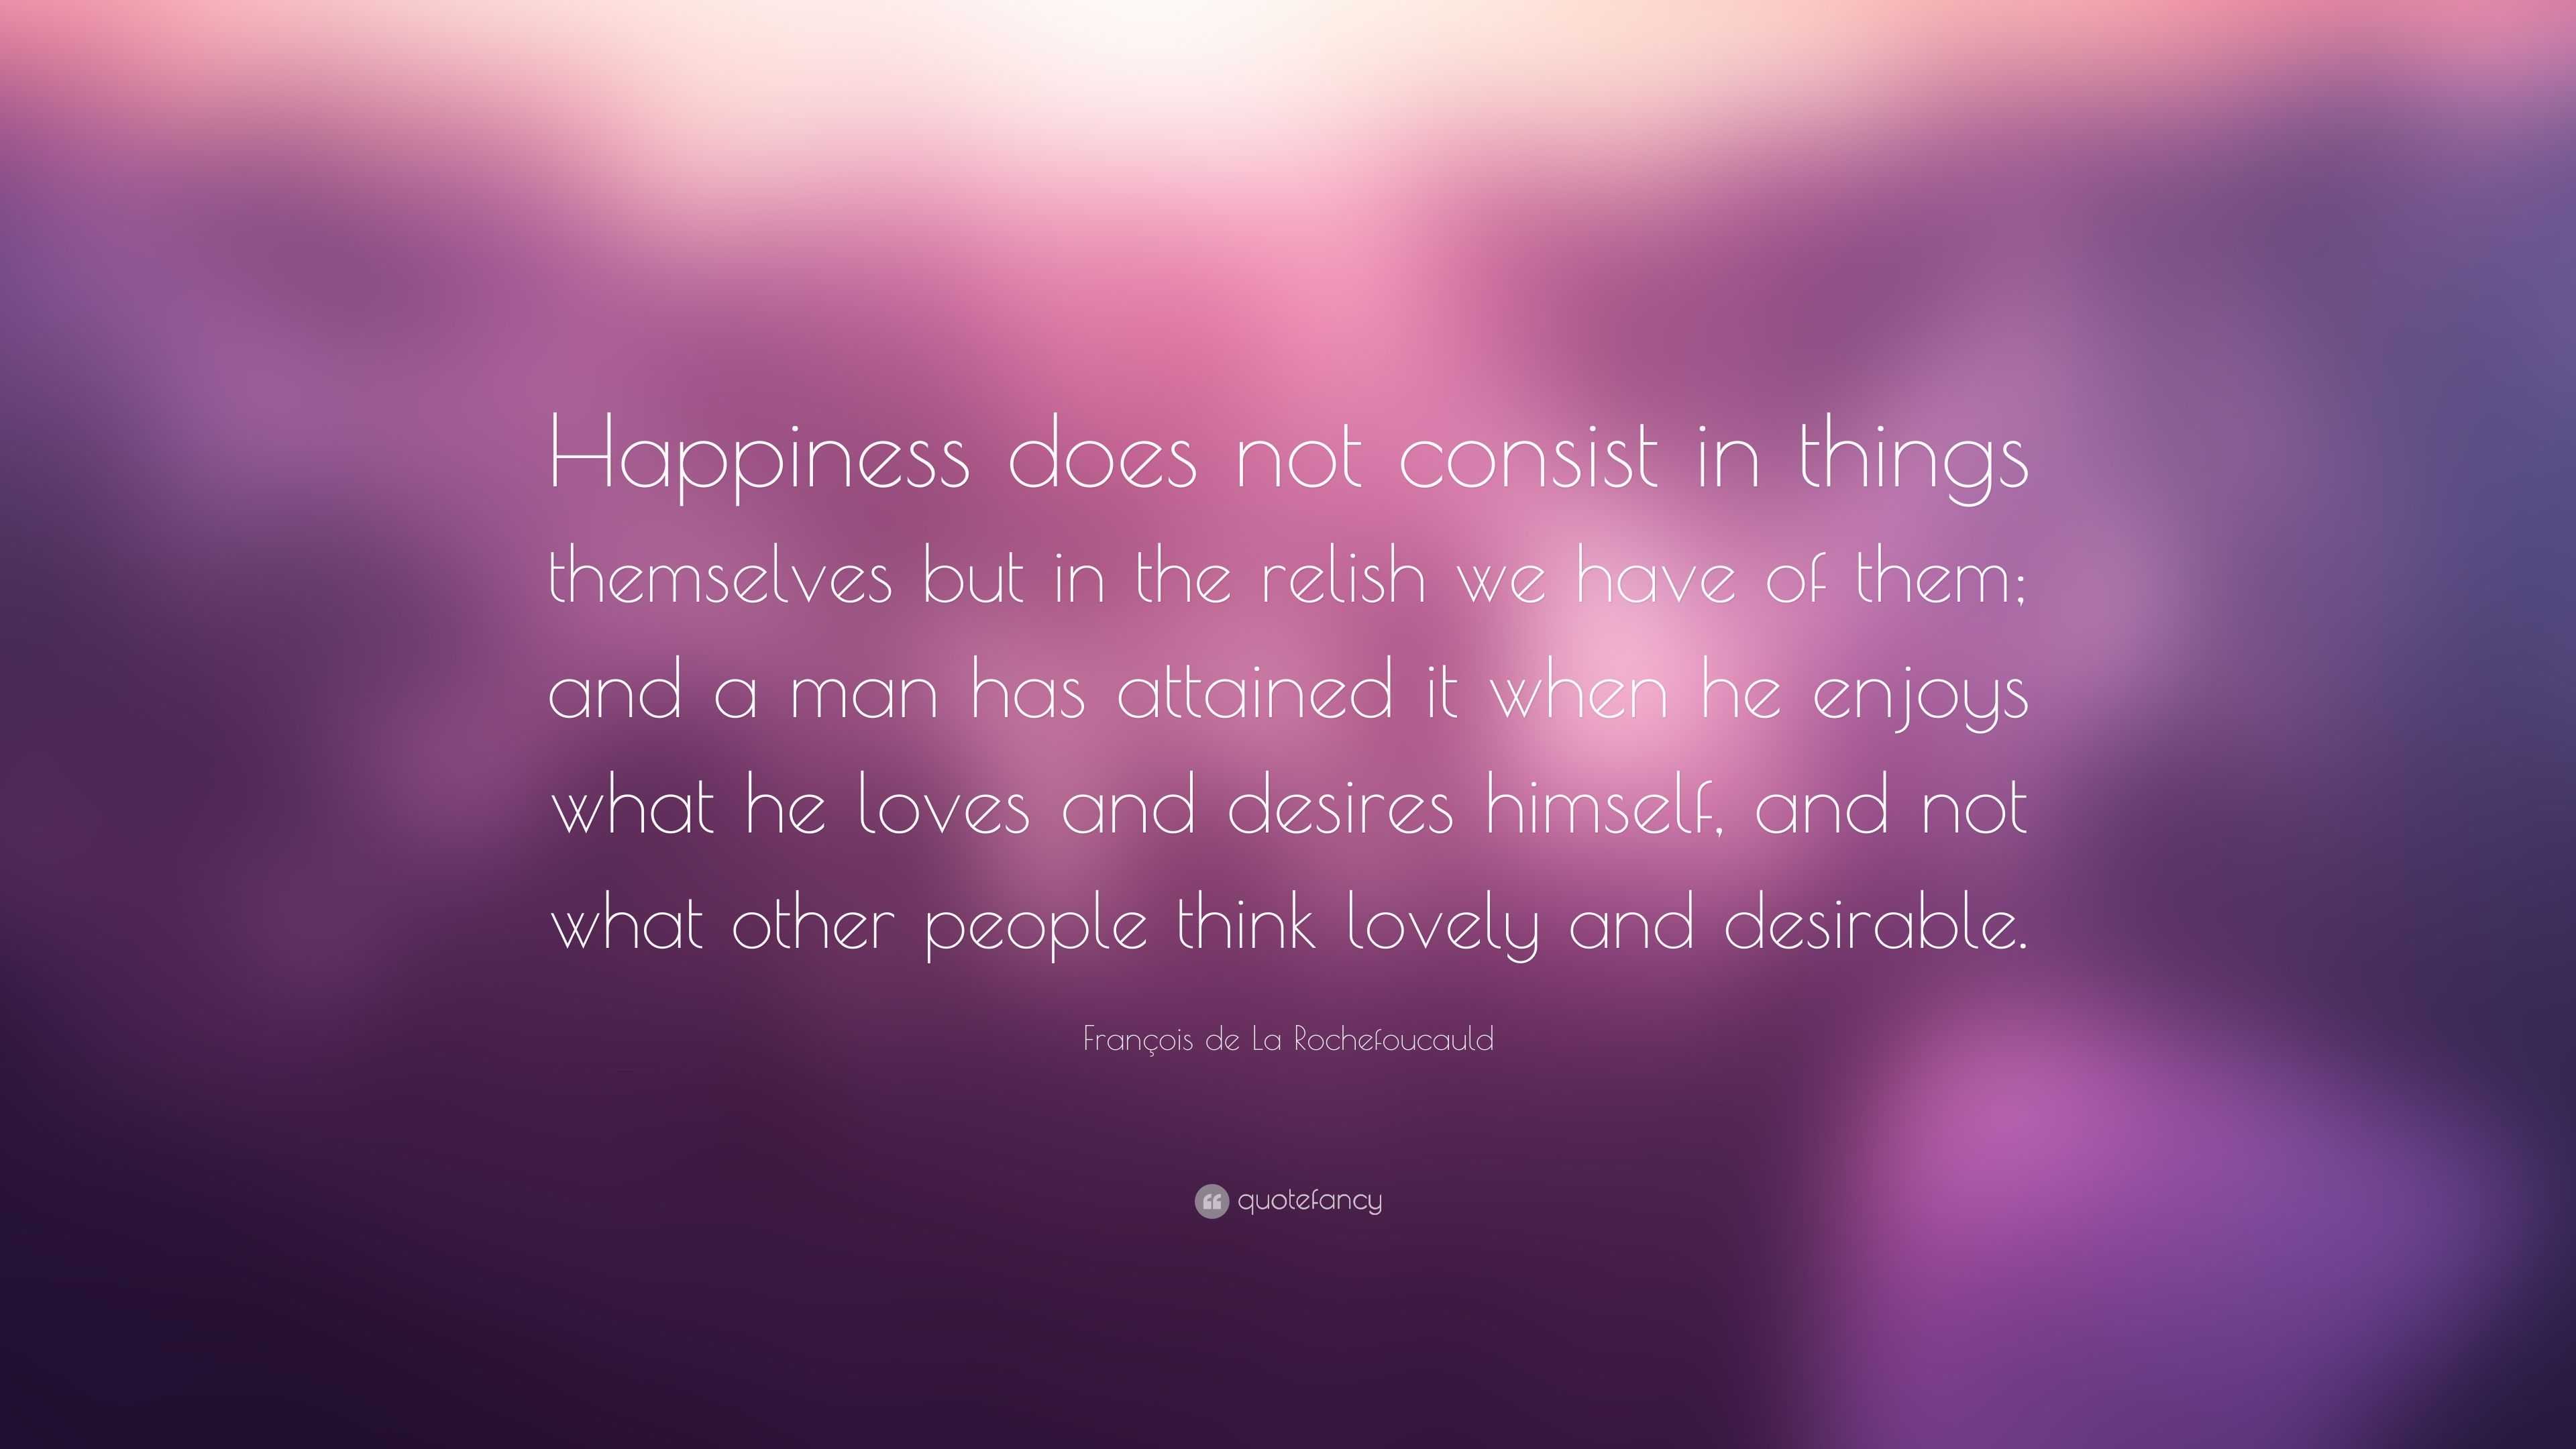 François de La Rochefoucauld Quote: “Happiness does not consist in ...